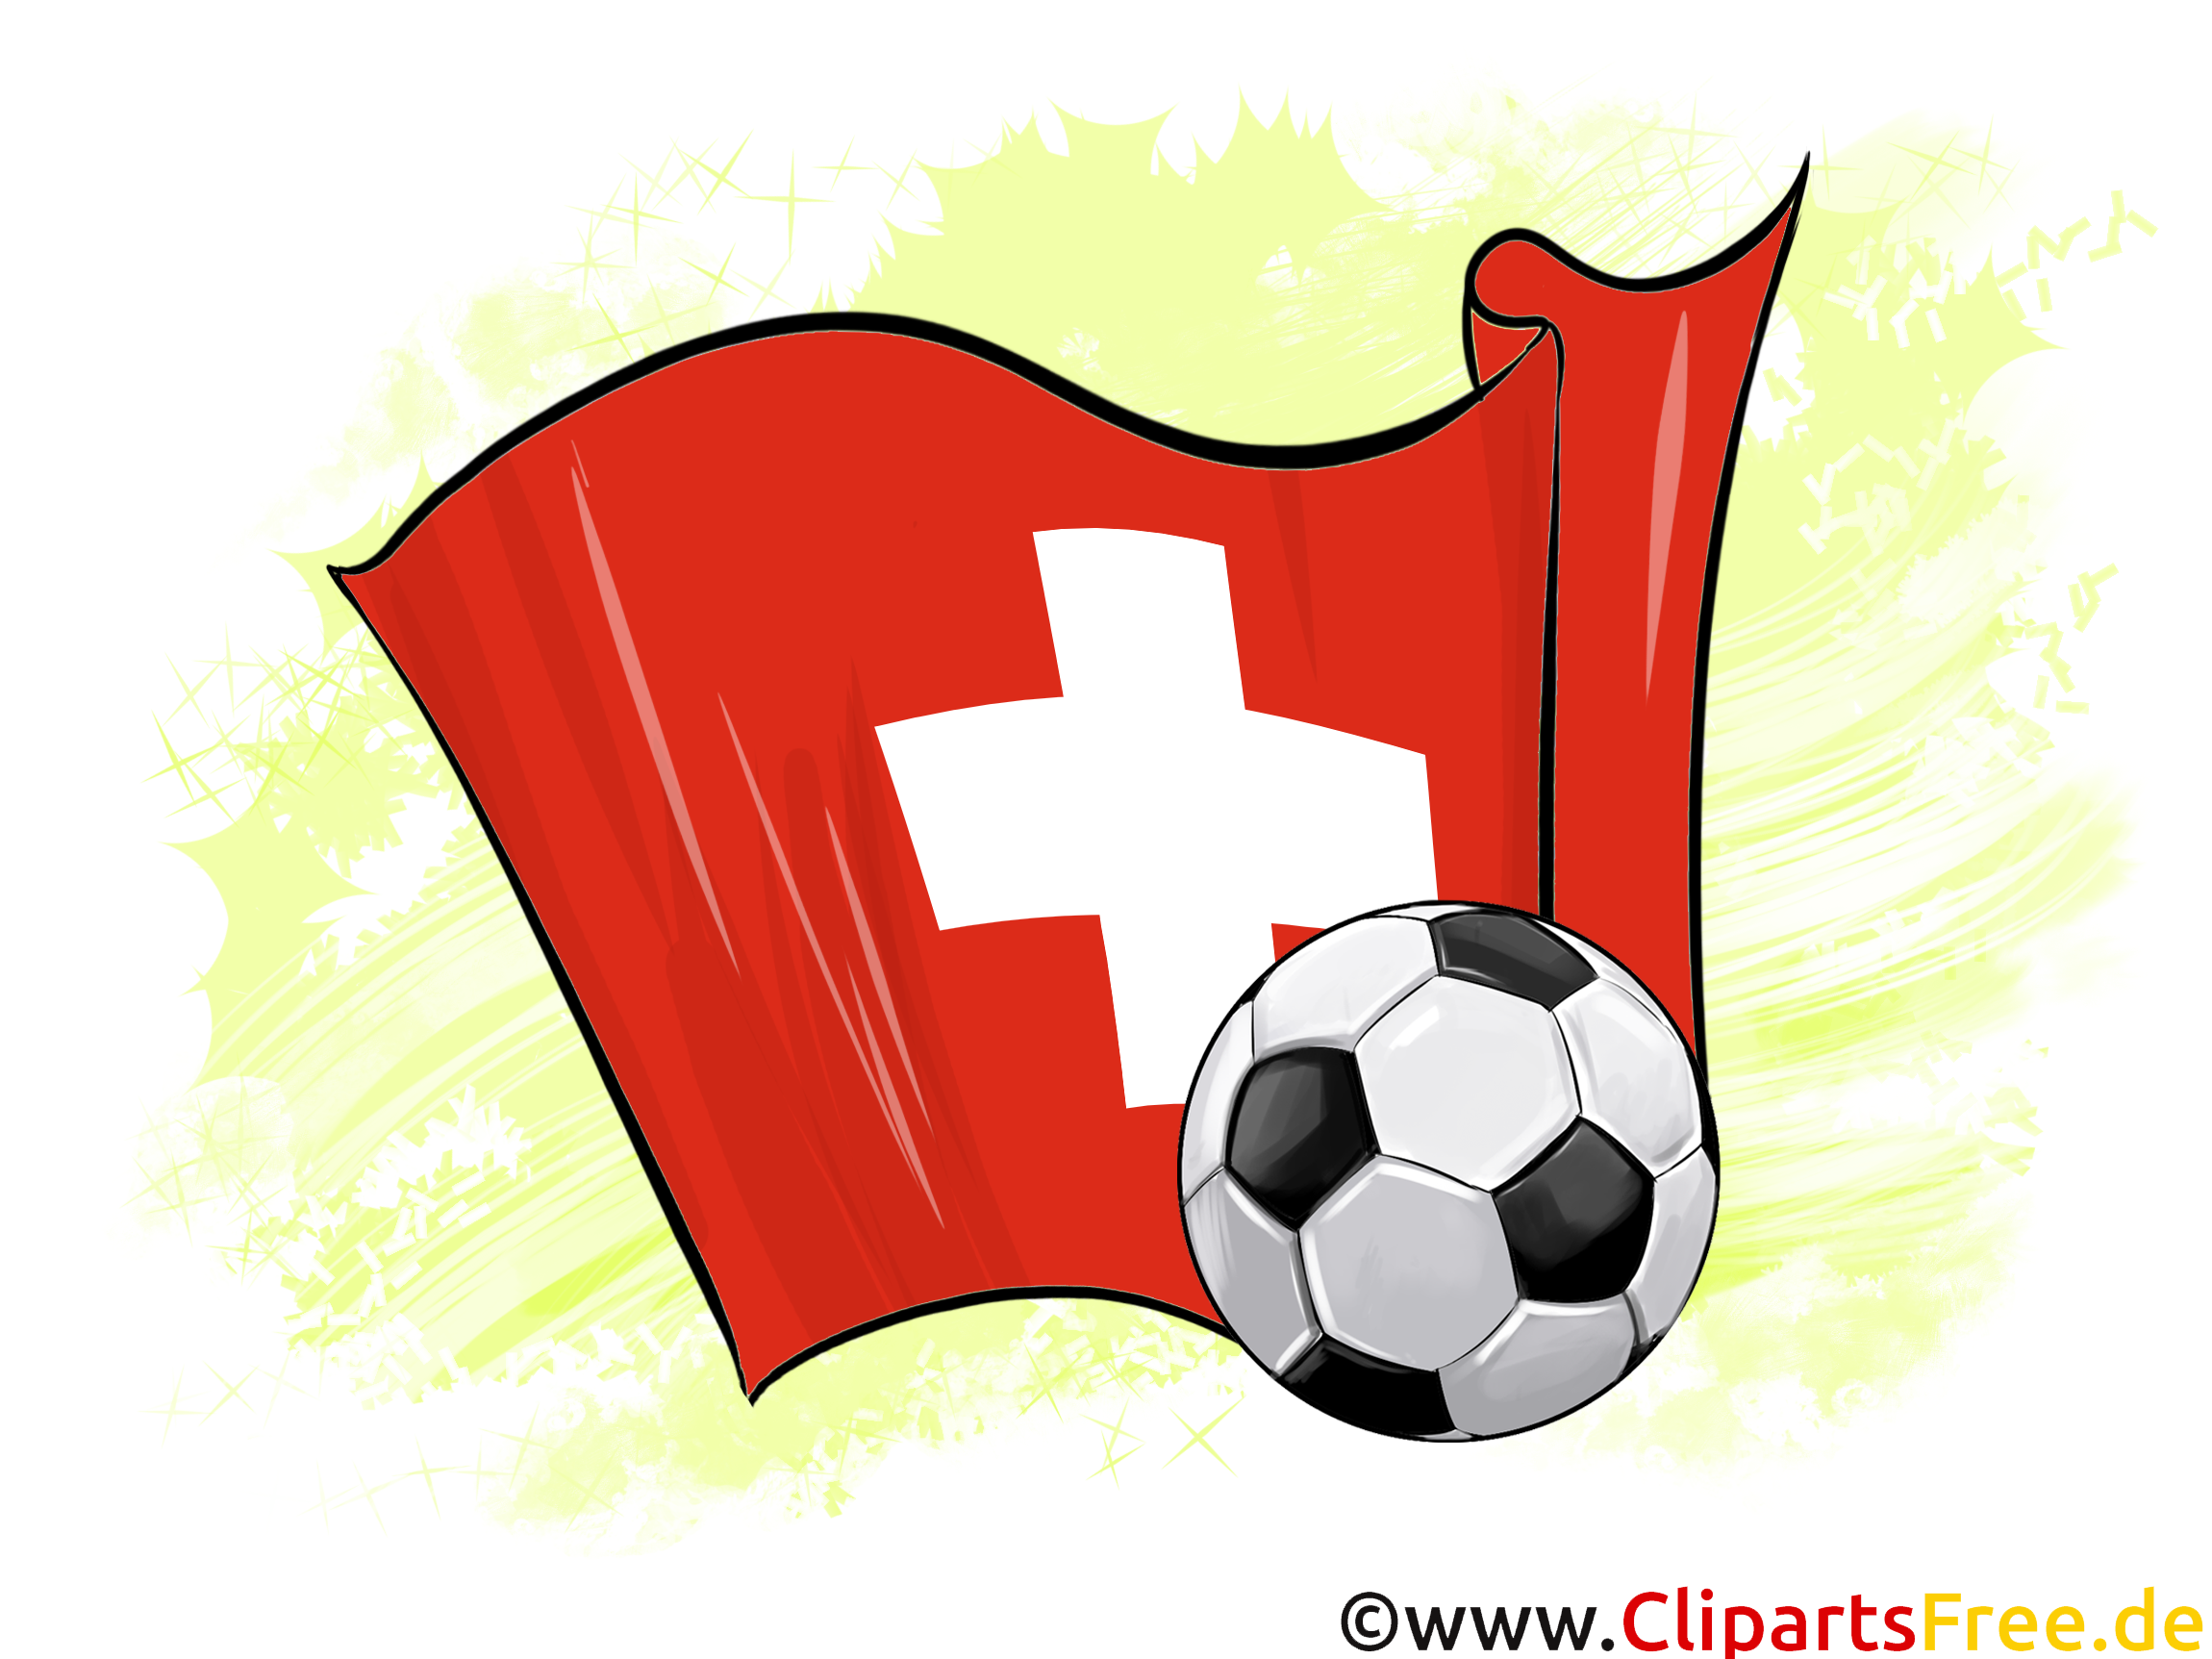 Suisse DrapeauTélécharger pour gratuit Images Soccer